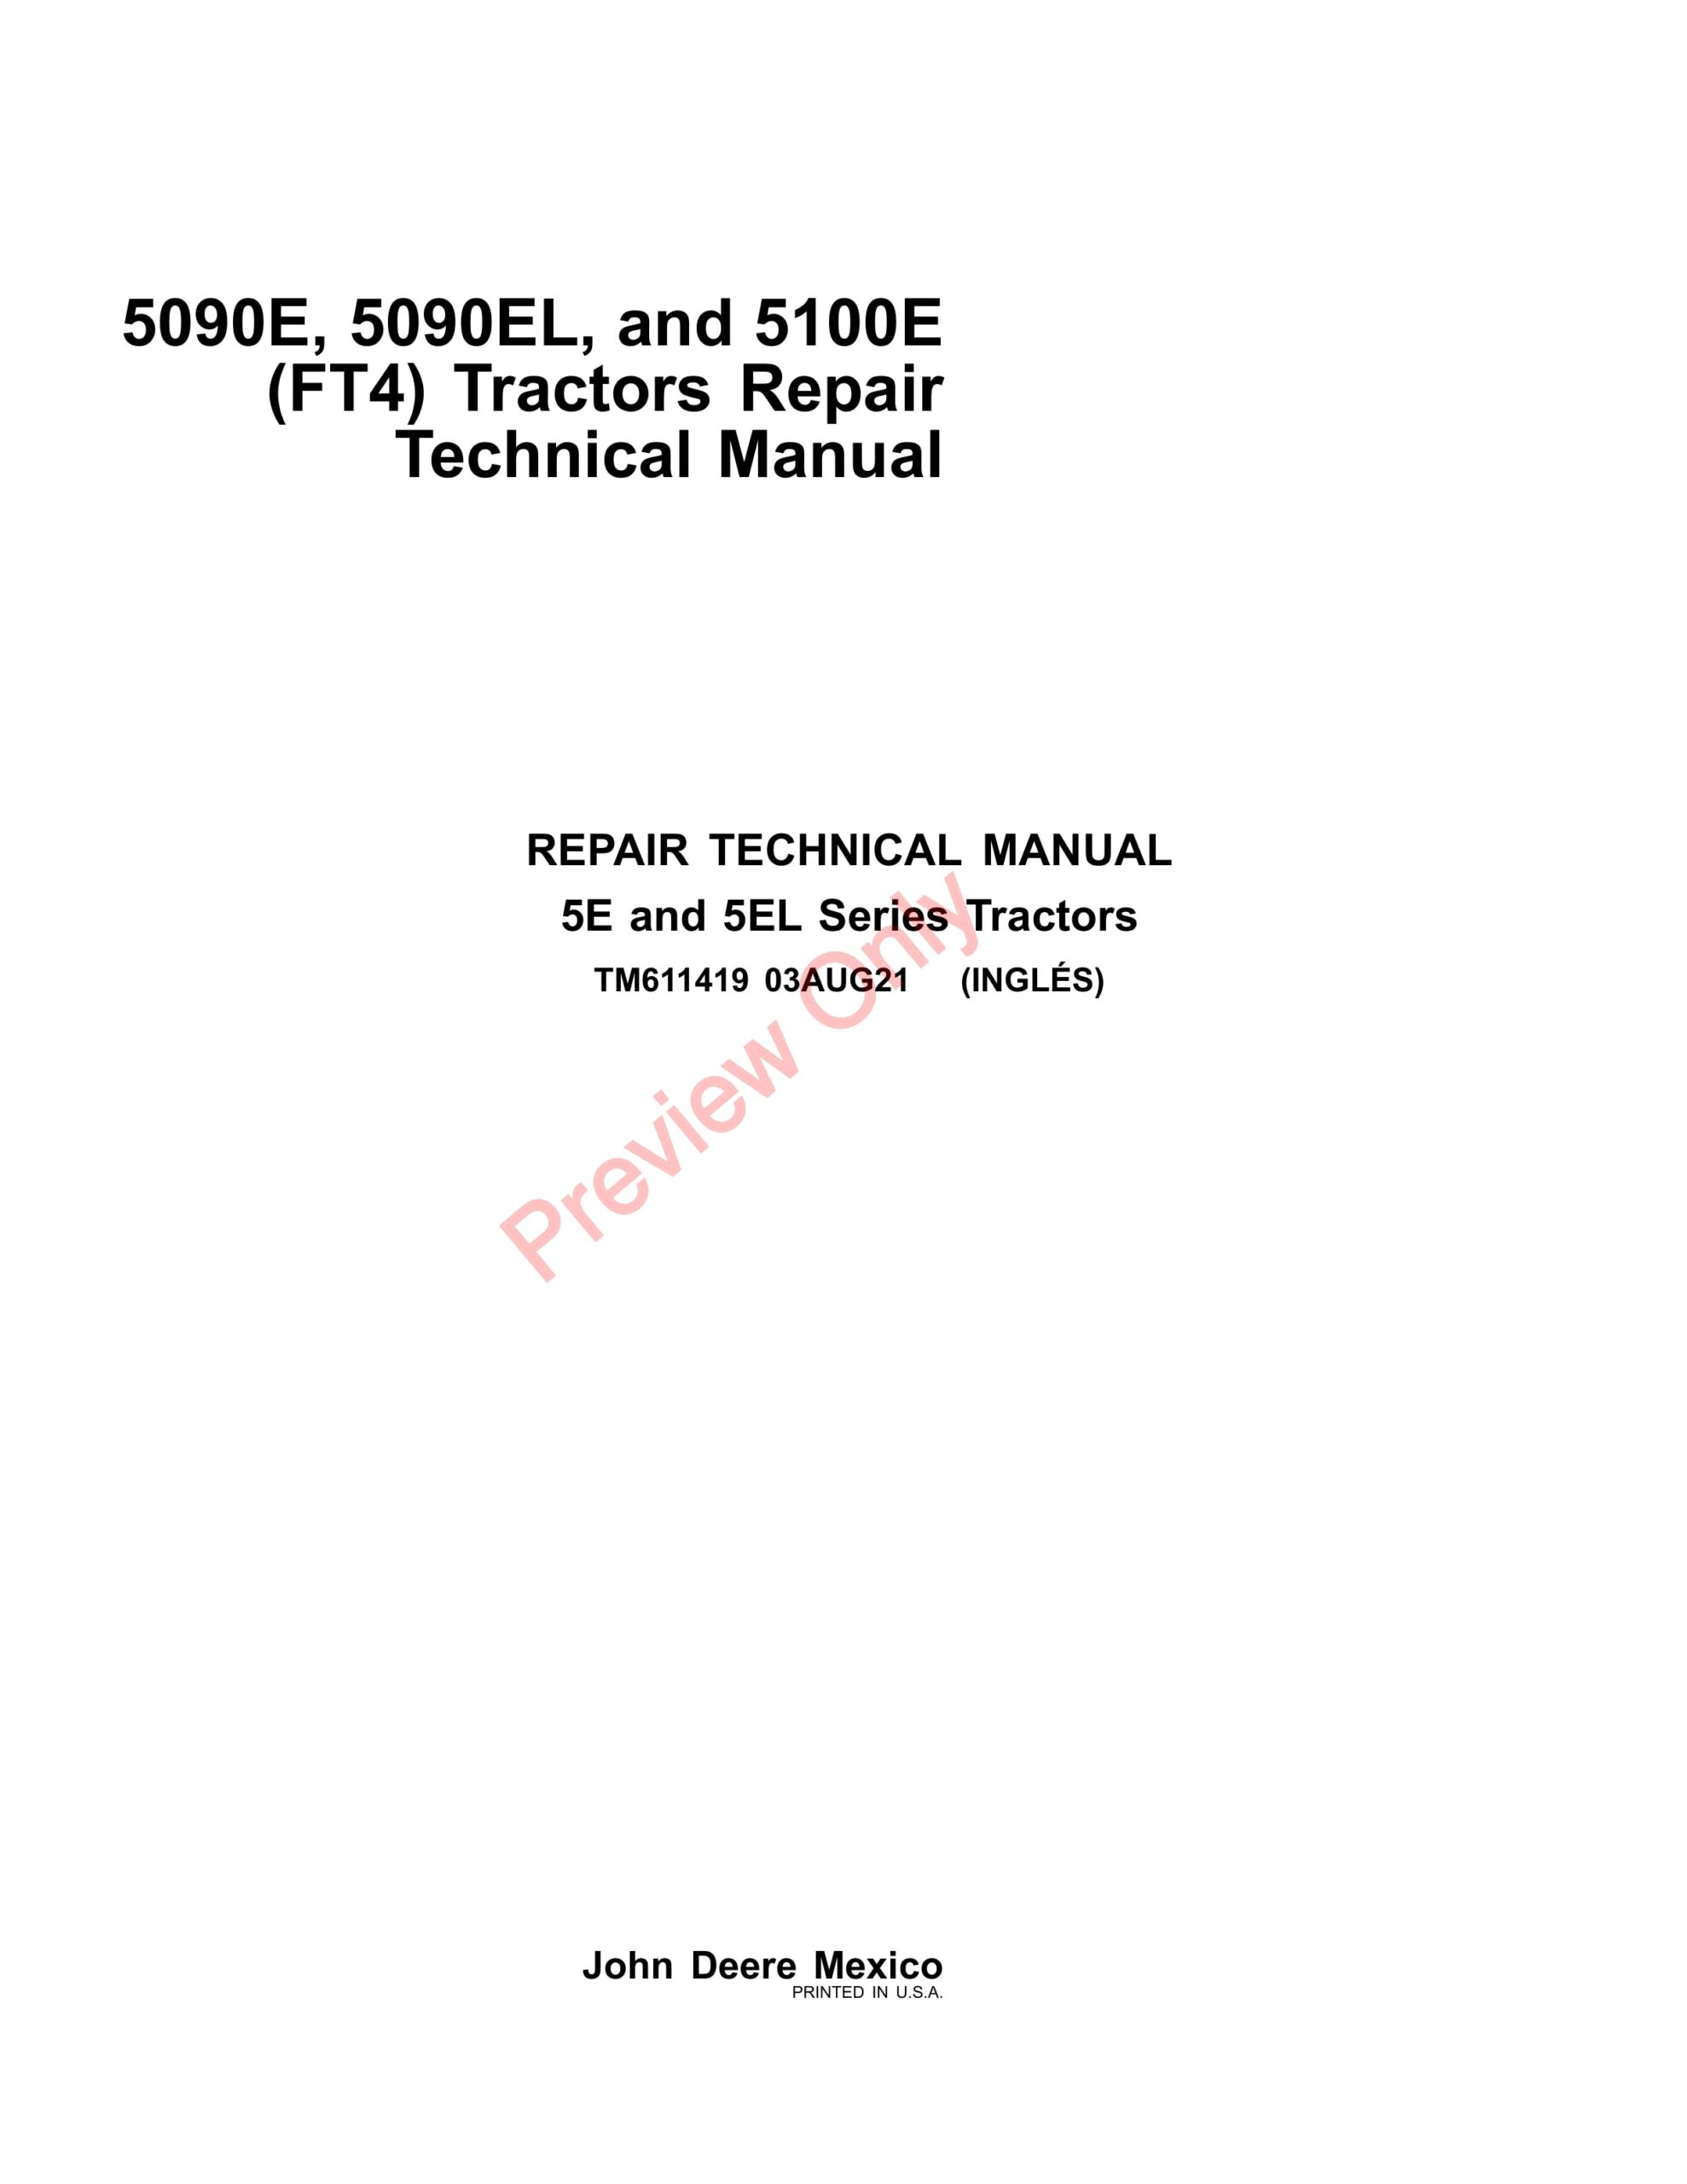 John Deere 5090E, 5090EL, and 5100E (FT4) Tractors Repair Technical Manual TM611419 03AUG21-1